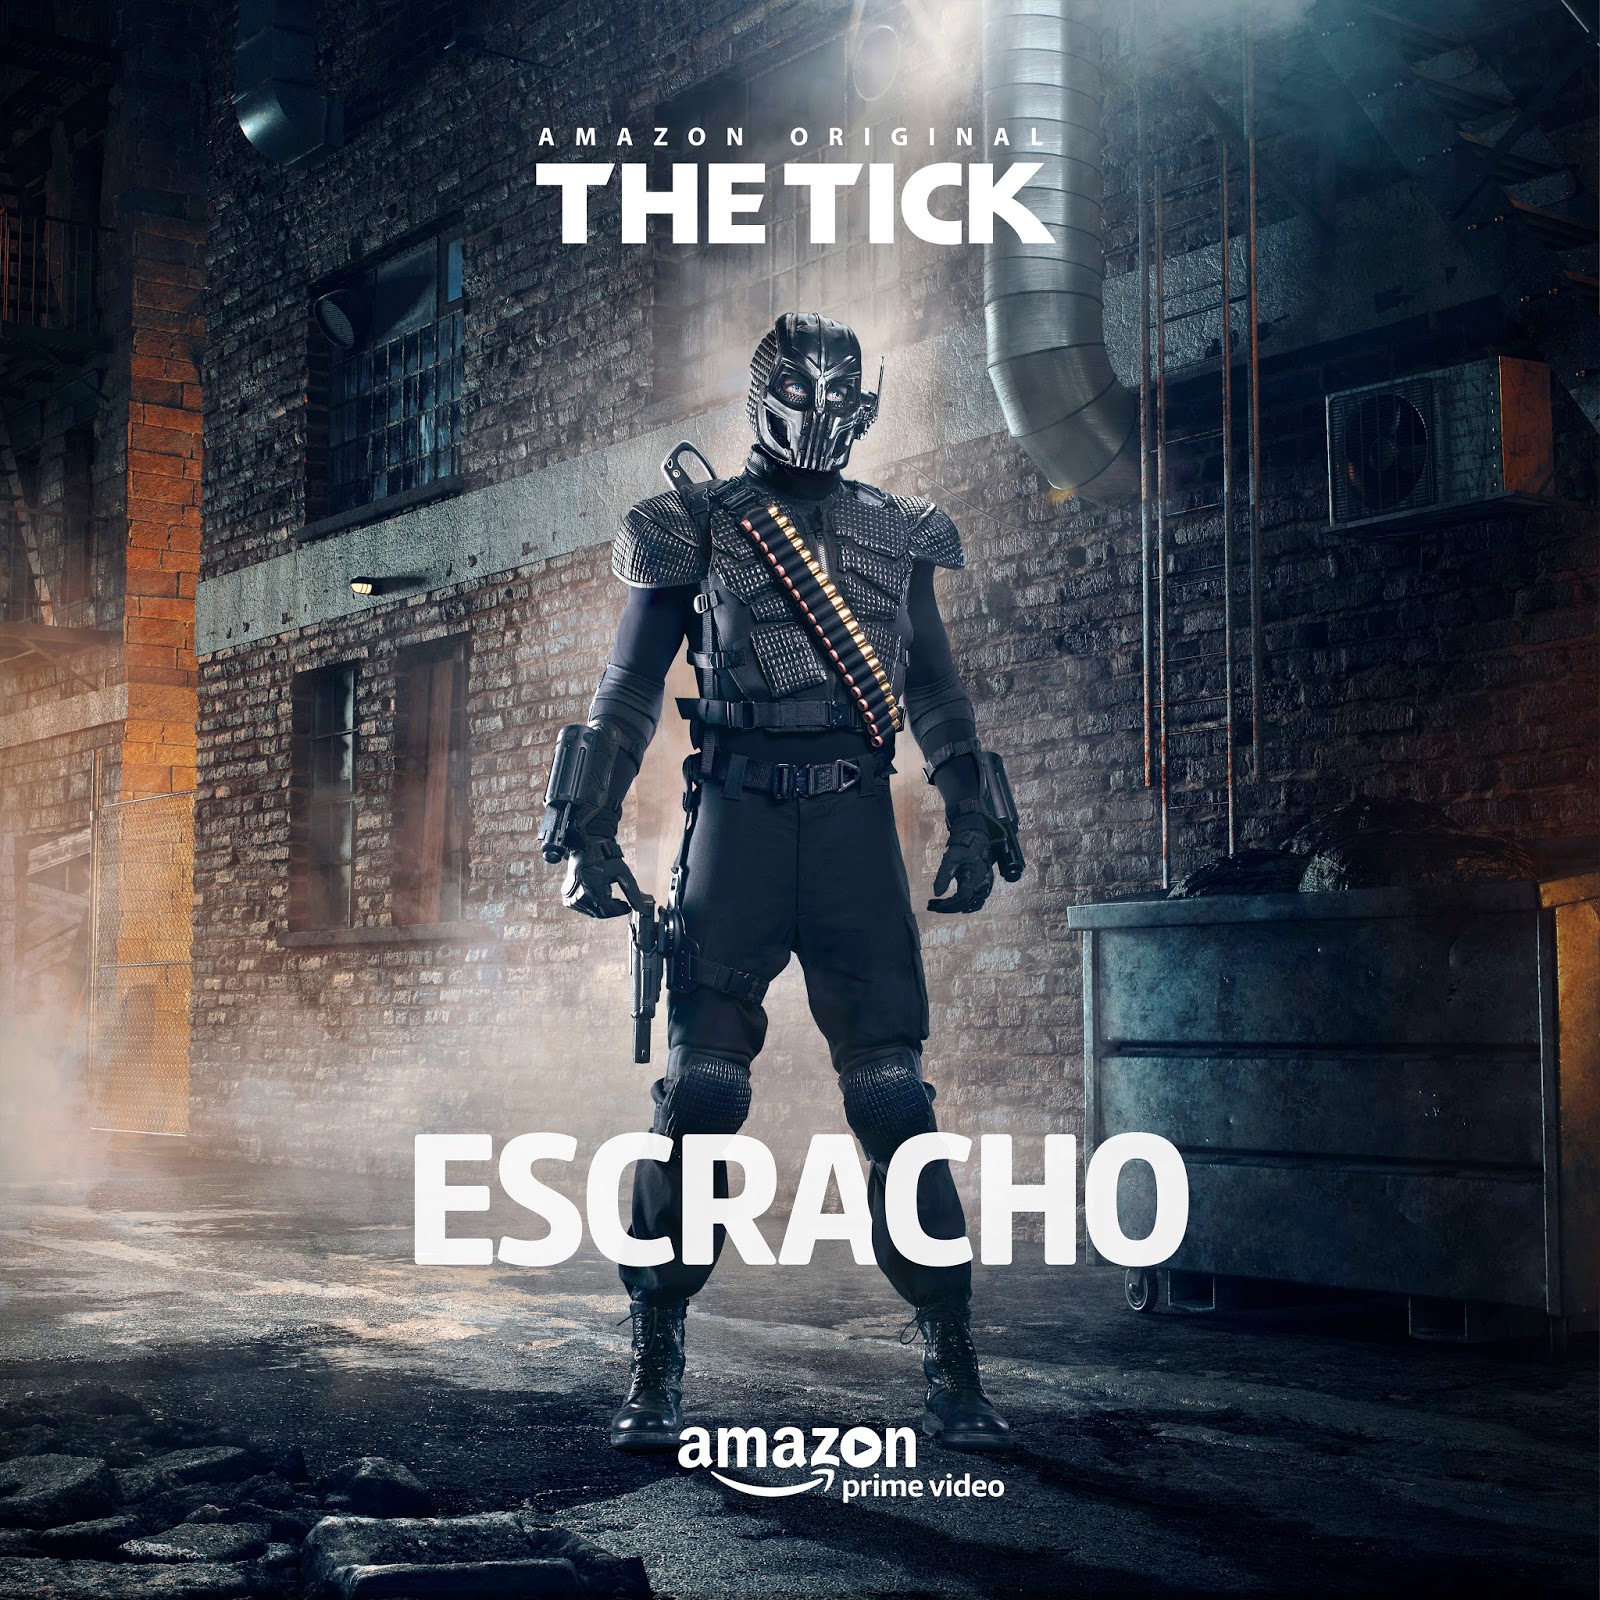 The Tick Escracho